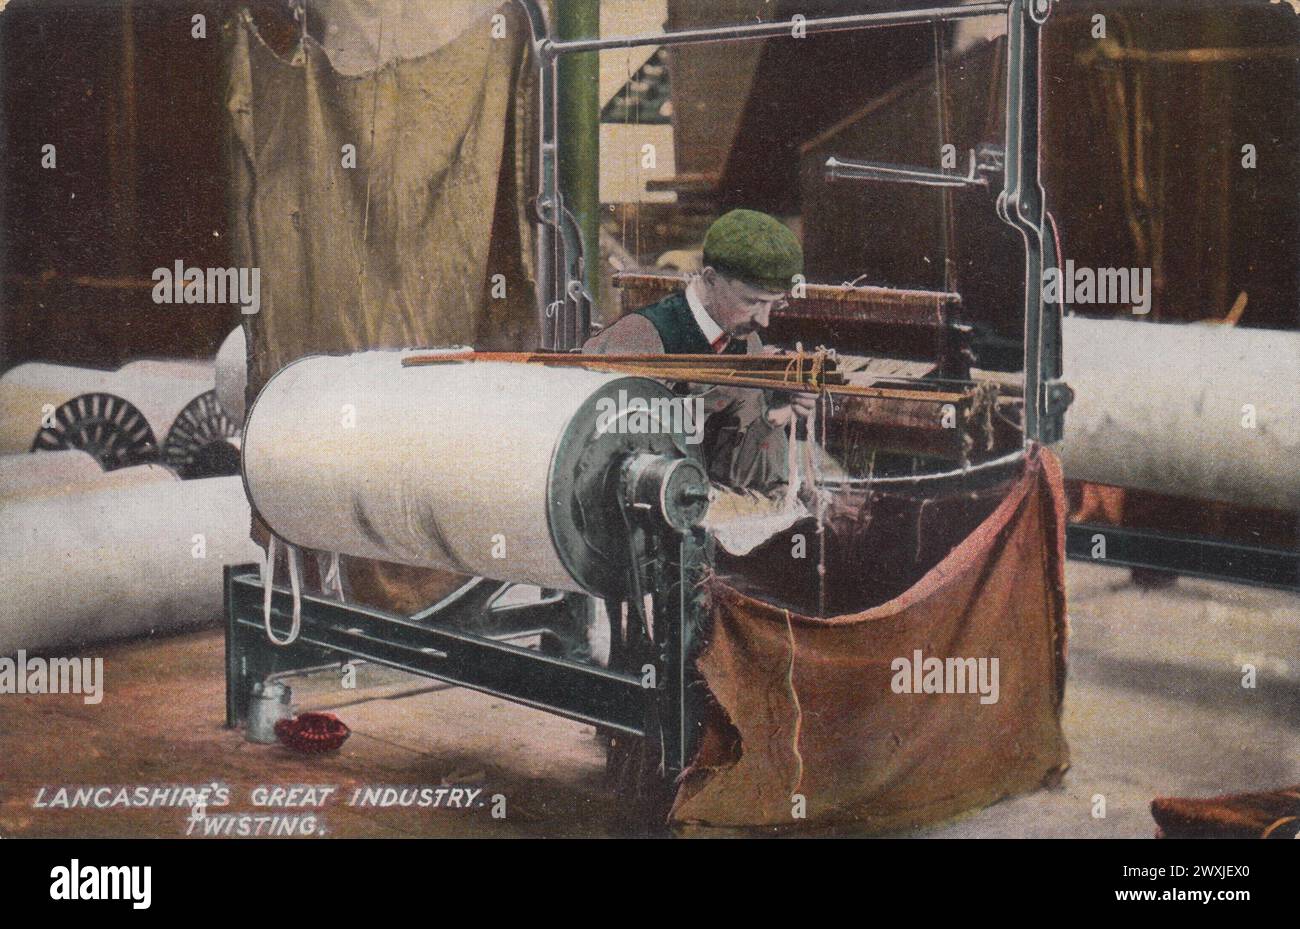 'Lancashire's Great Industry : Twisting' : photographie teintée en couleur publiée sous forme de carte postale par L. Pickles & Co, Bradford, au début du XXe siècle. Il montre un homme dans un chapeau de tissu travaillant dans une usine de coton du Lancashire sur une machine à retordre, avec d'énormes bobines de coton en arrière-plan Banque D'Images